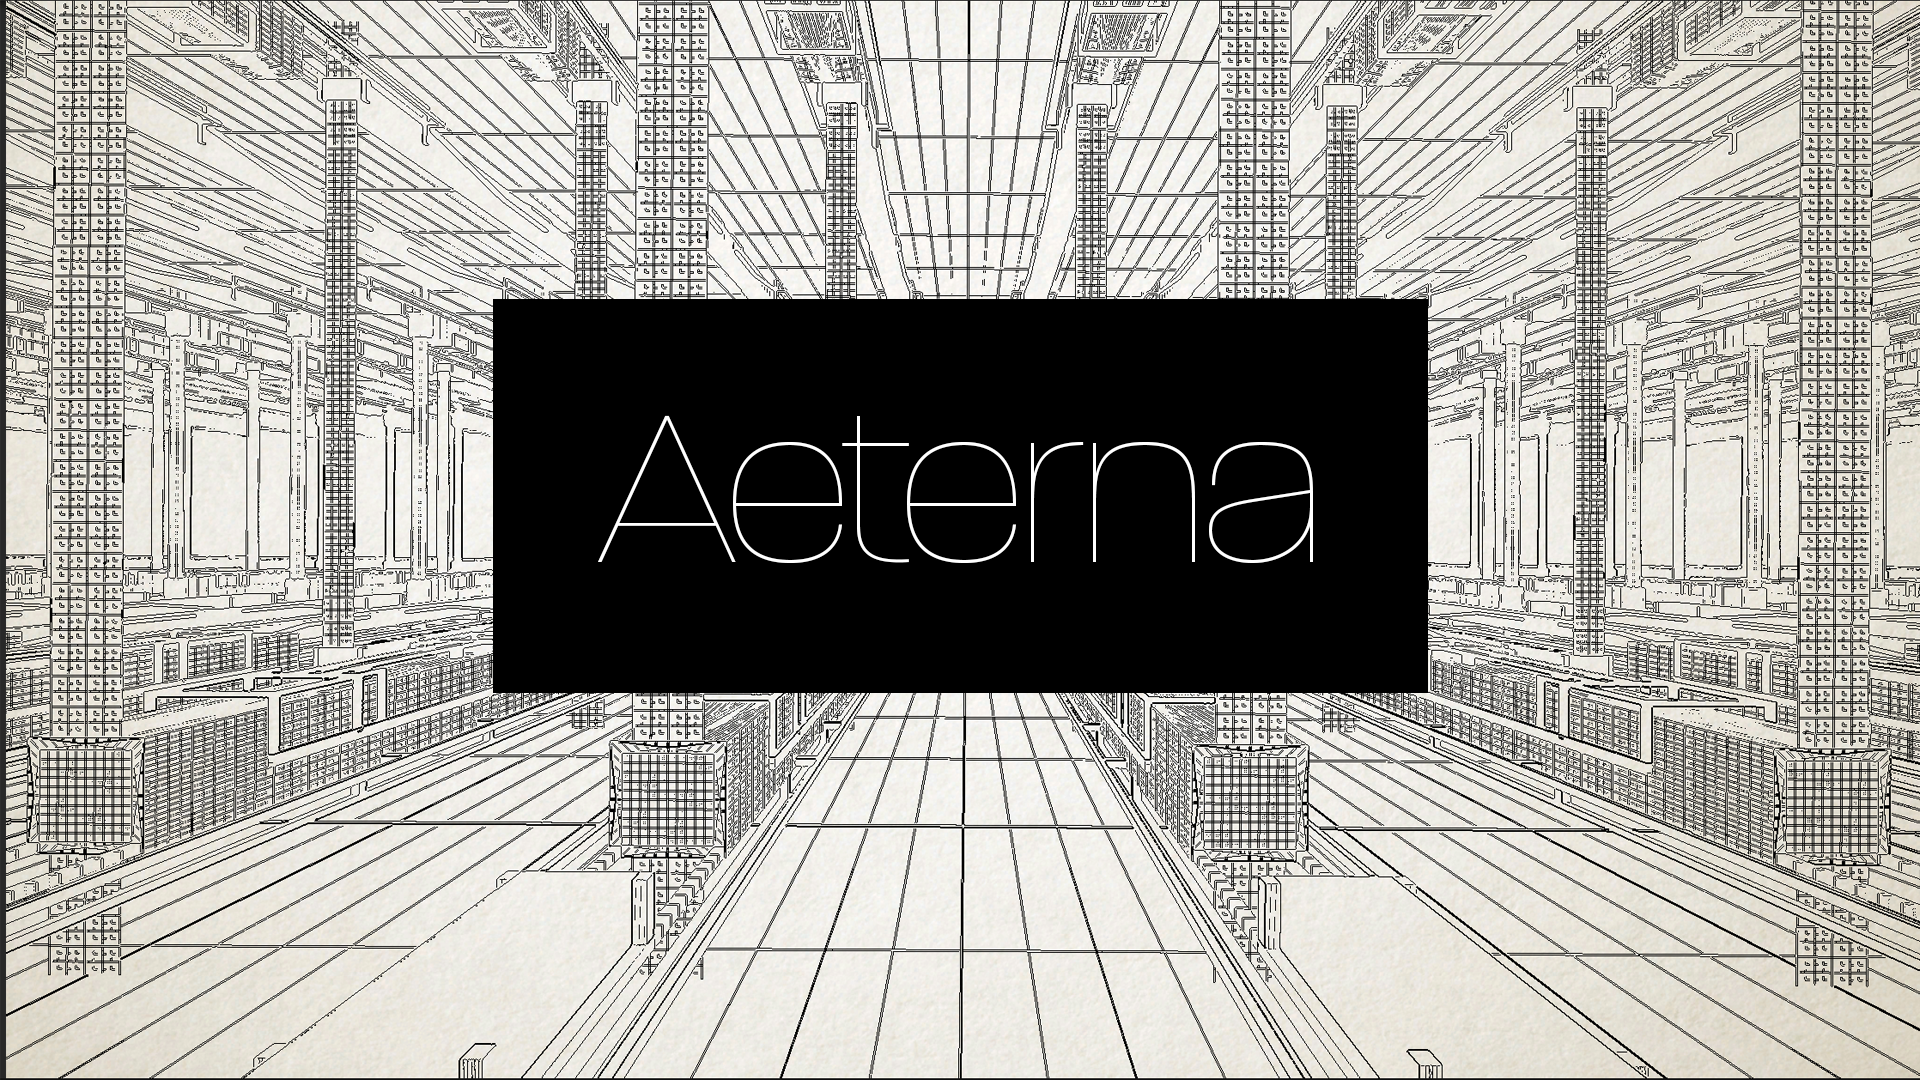 Aeterna Logo